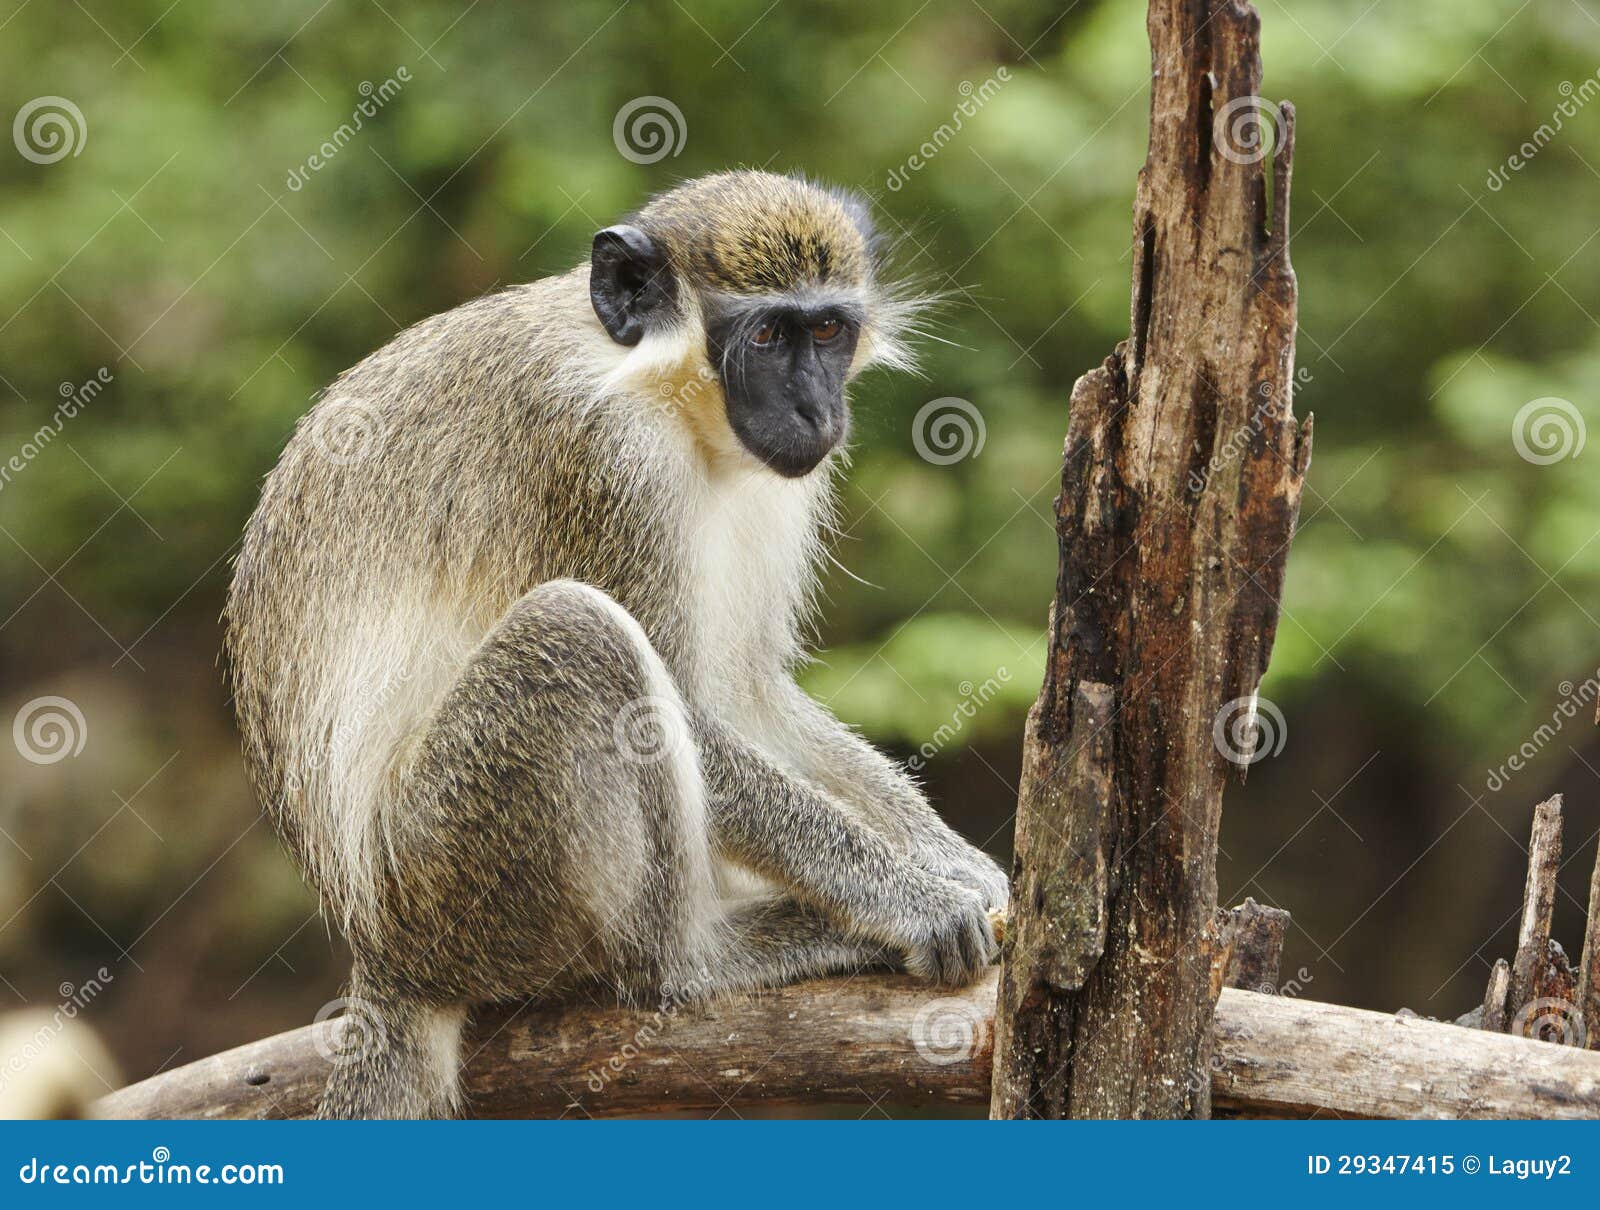 Mono verde de Barbados imagen de archivo. Imagen de reserva - 29347415